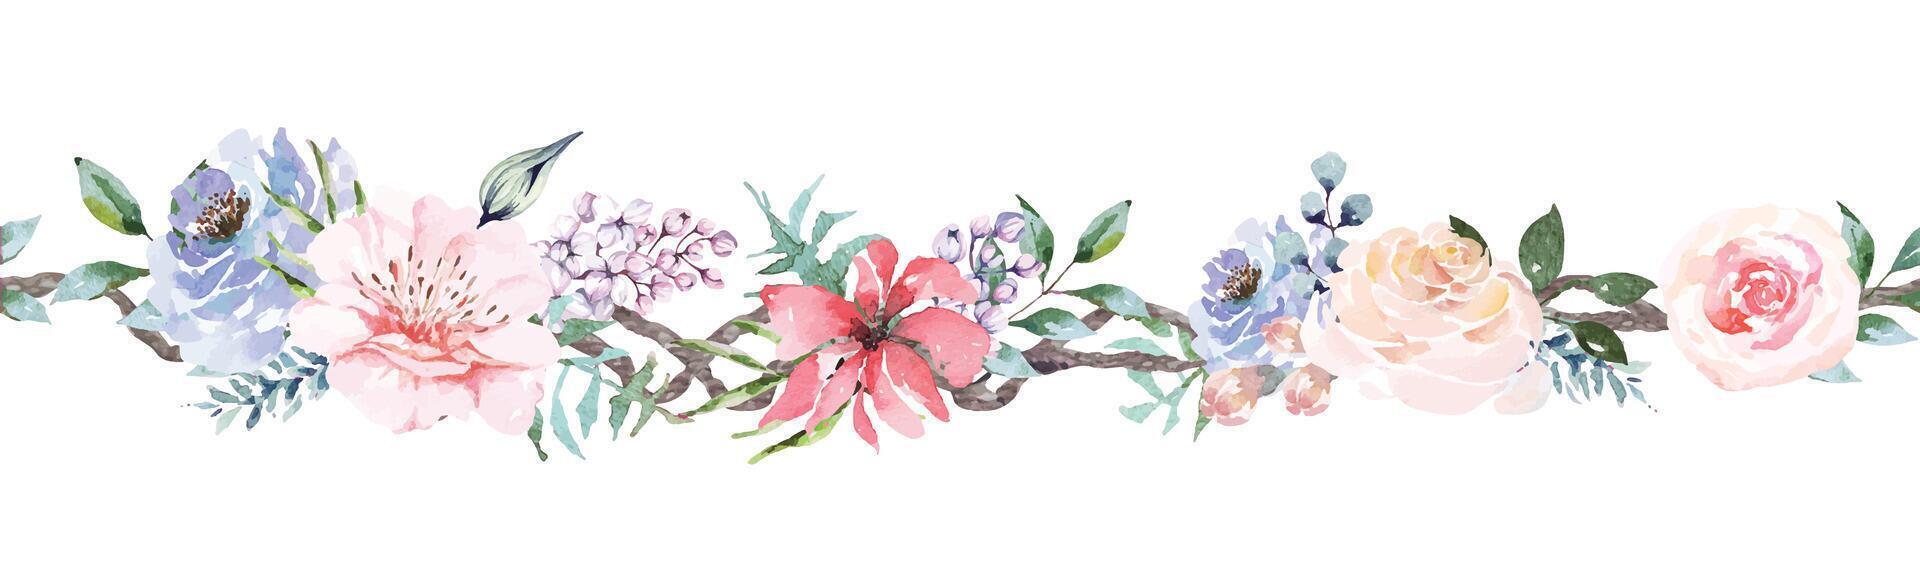 senza soluzione di continuità fiore bordo.floreale modello con foglia e rosa.botanica floreale bordo adatto per decorazione carte, invito nozze. vettore